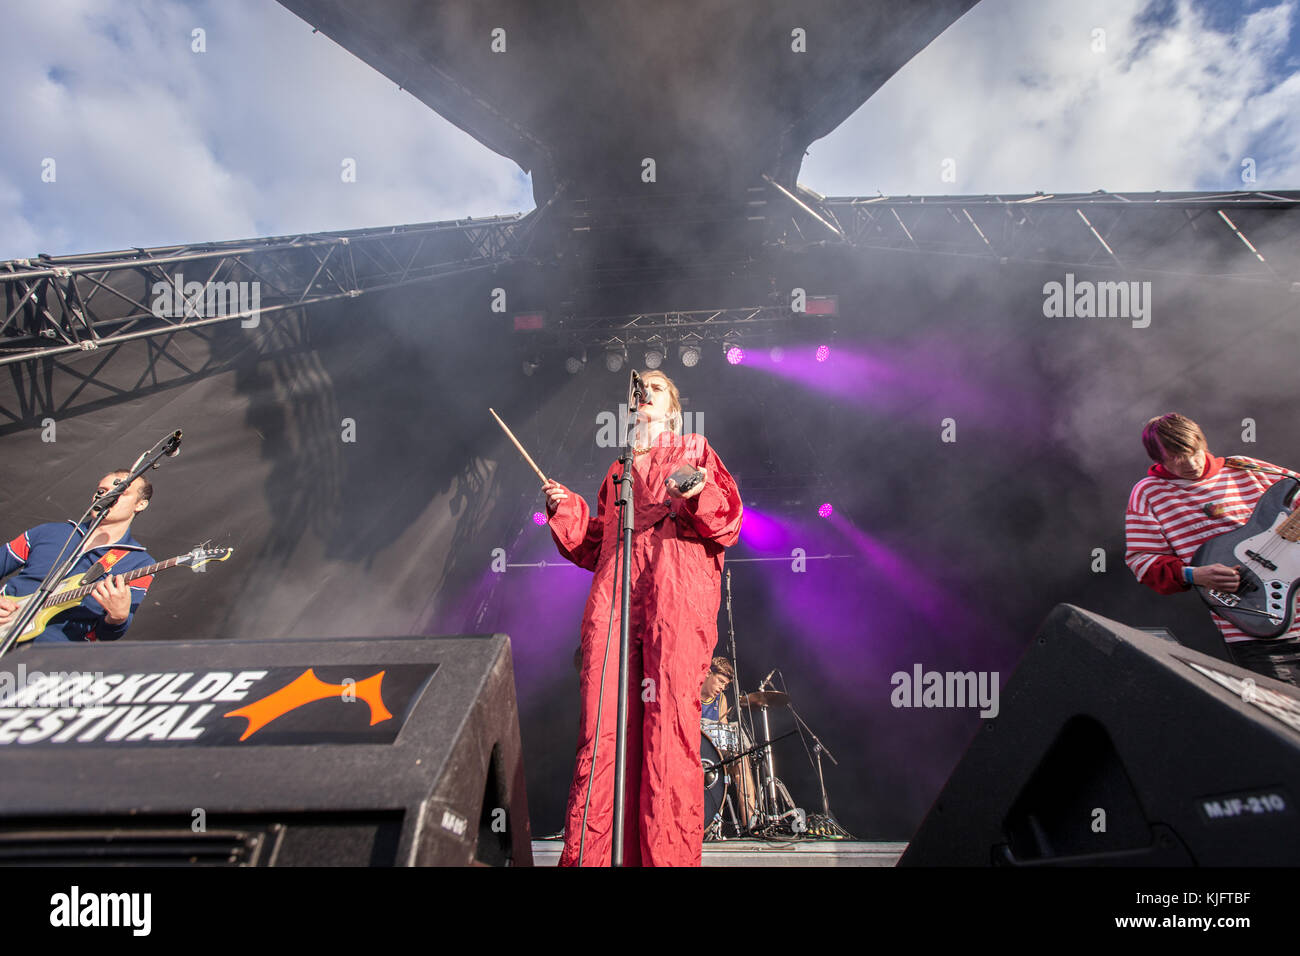 Denmark, Roskilde – June 26, 2017. The Norwegian rock band Pom Poko  performs a live concert during the Danish music festival Roskilde Festival  2017. Here singer Ragnhild Fangel is seen live on